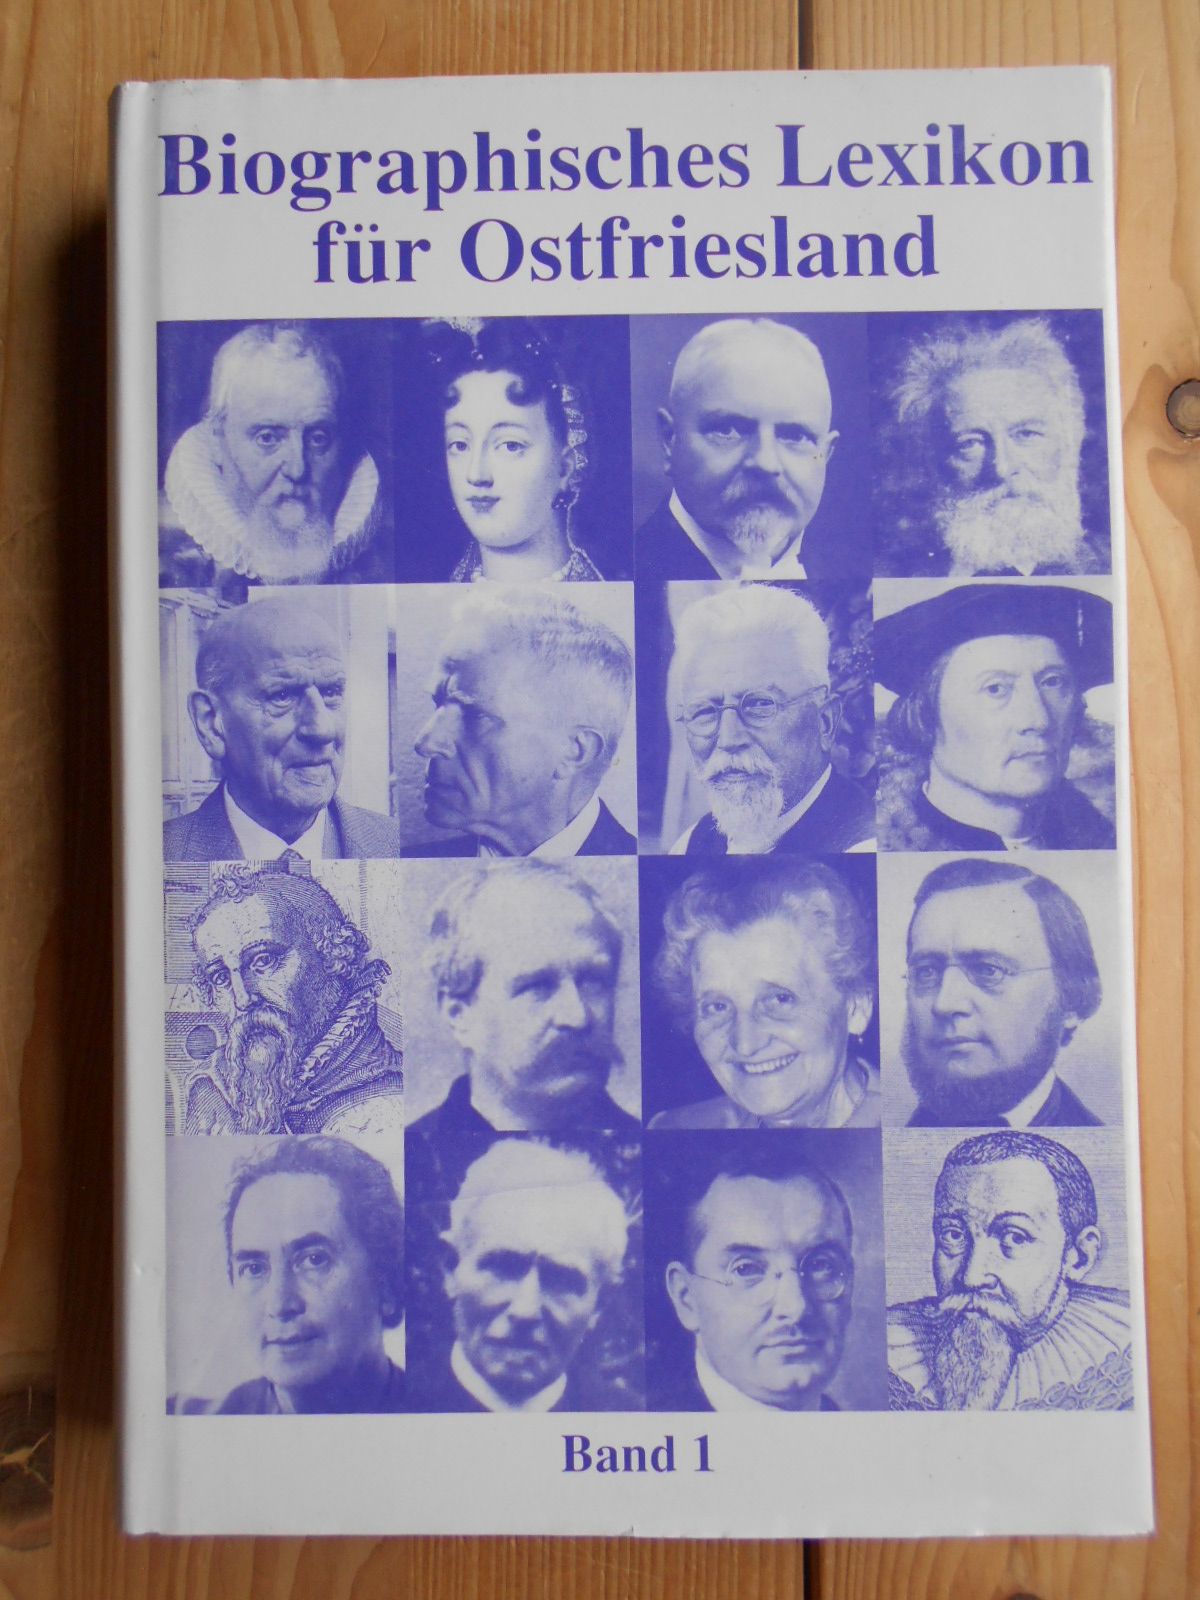 Biographisches Lexikon für Ostfriesland; Bd. 1. Herausgegeben im Auftrag der Ostfriesischen Landschaft von Martin Tielke. - Tielke, Martin (Hrsg.)